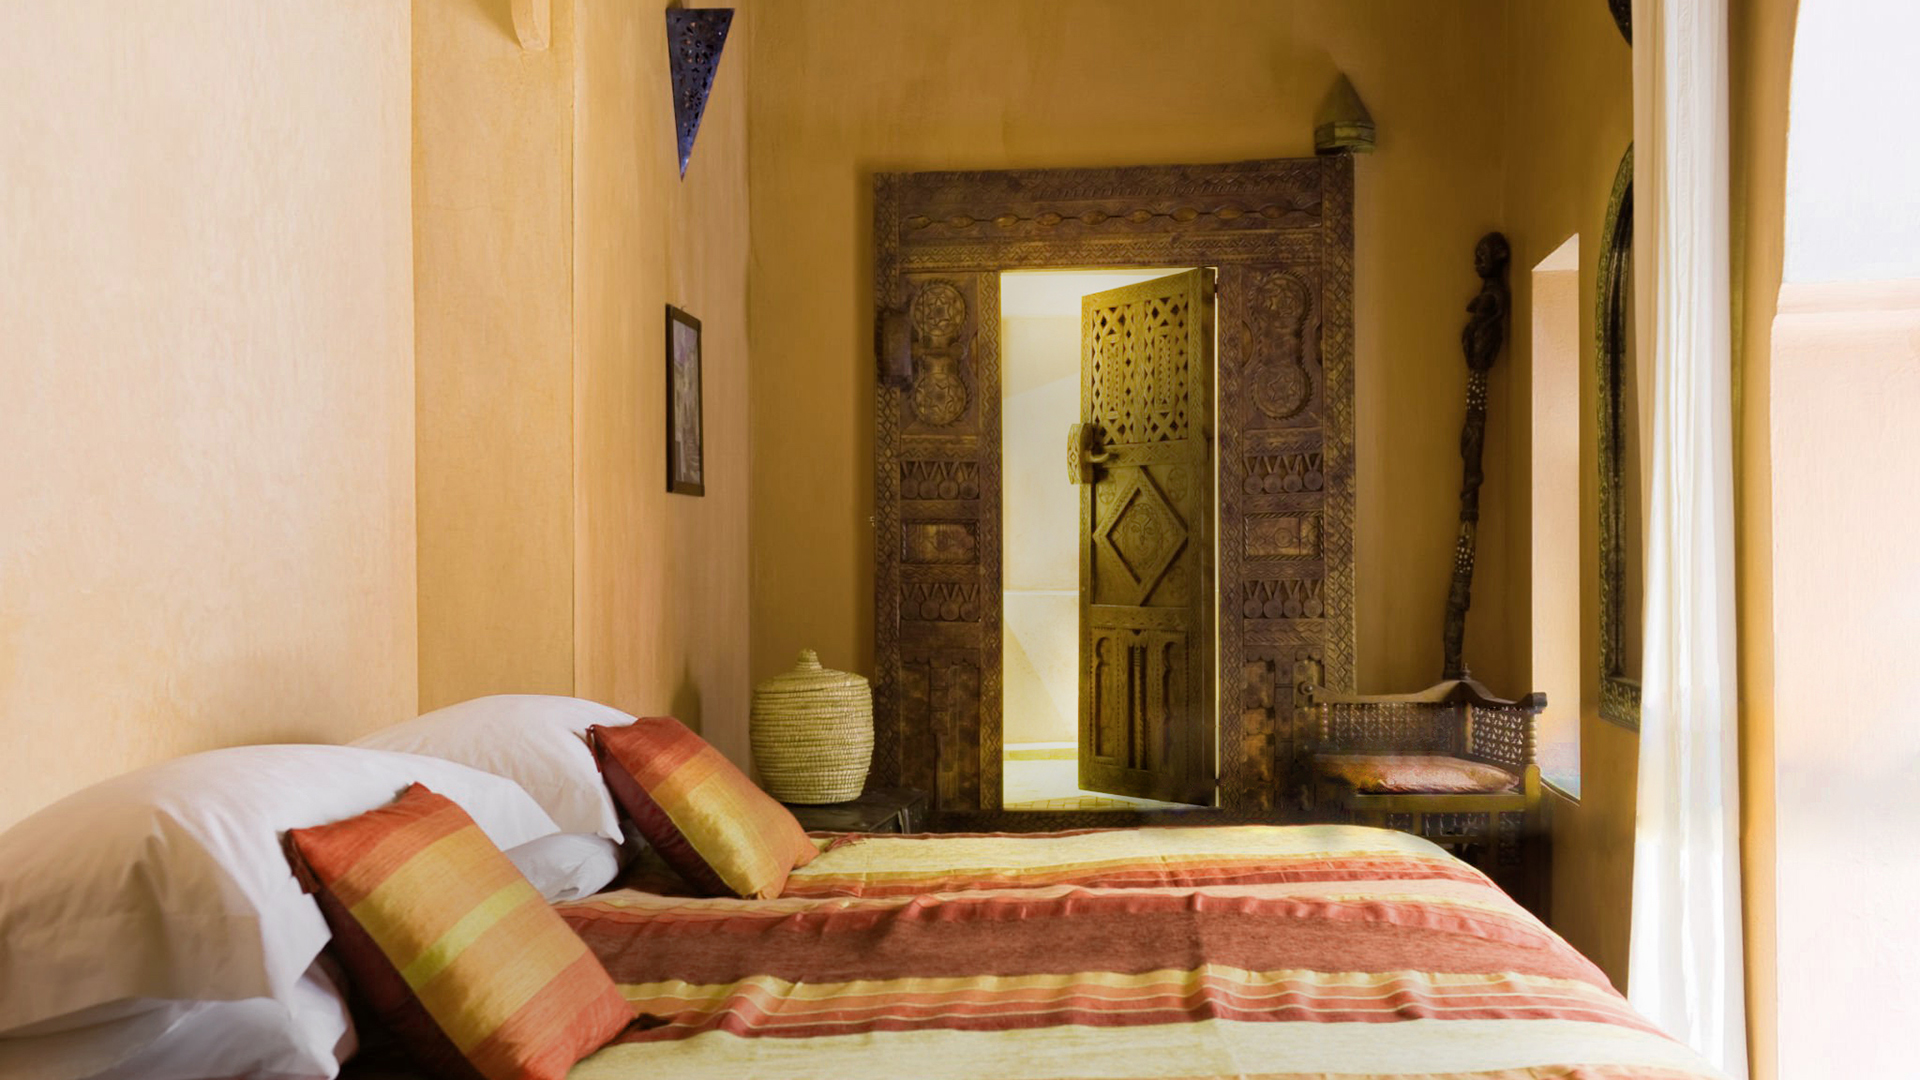 camera da letto in stile arabo con tadelakt alle pareti